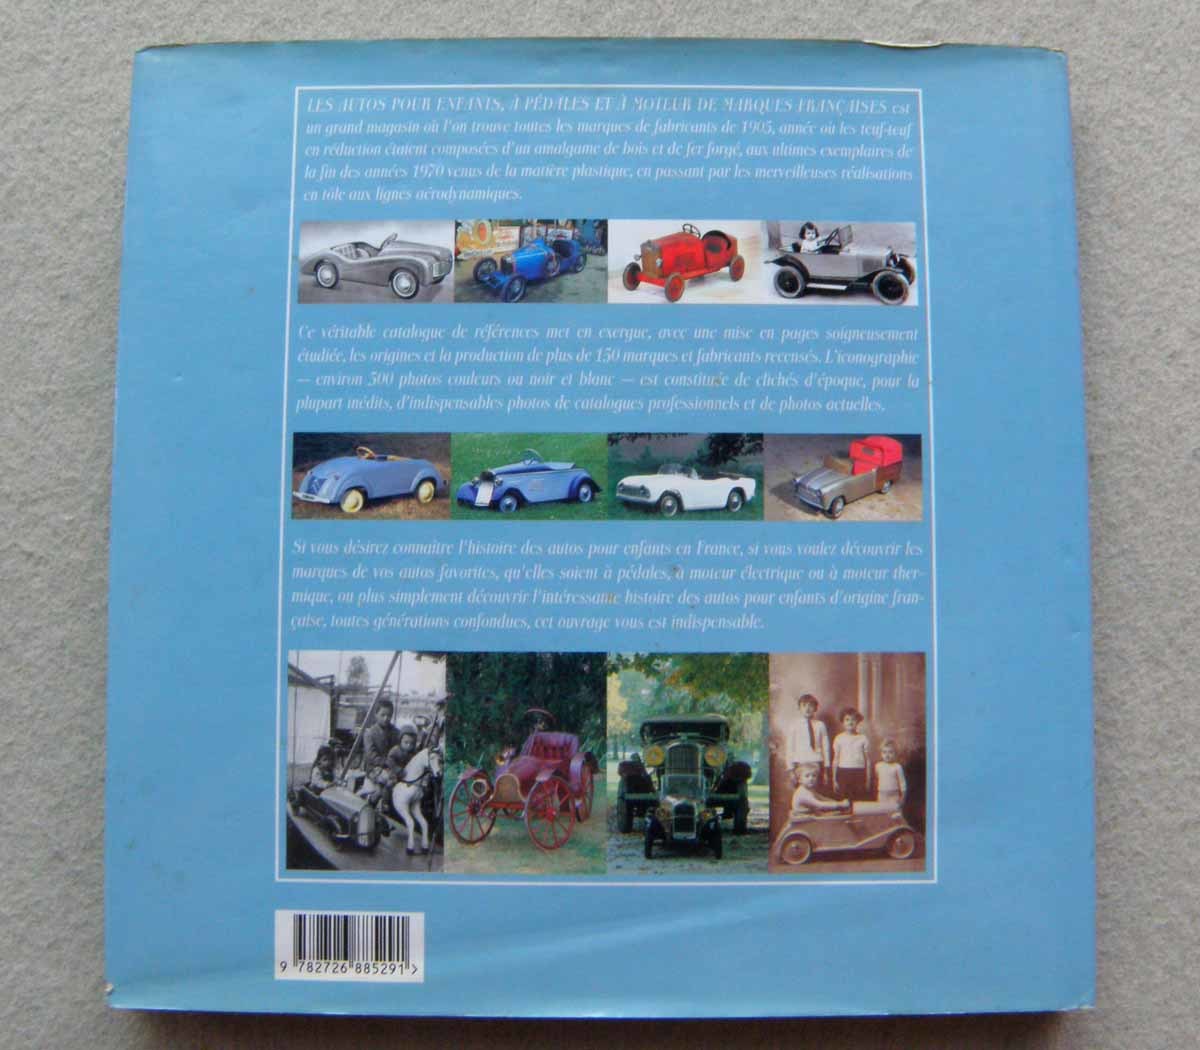  foreign book Autos pour enfants - a pedales & a moteur, de marques francaises pedal car toy for riding Vintage classic photograph materials 